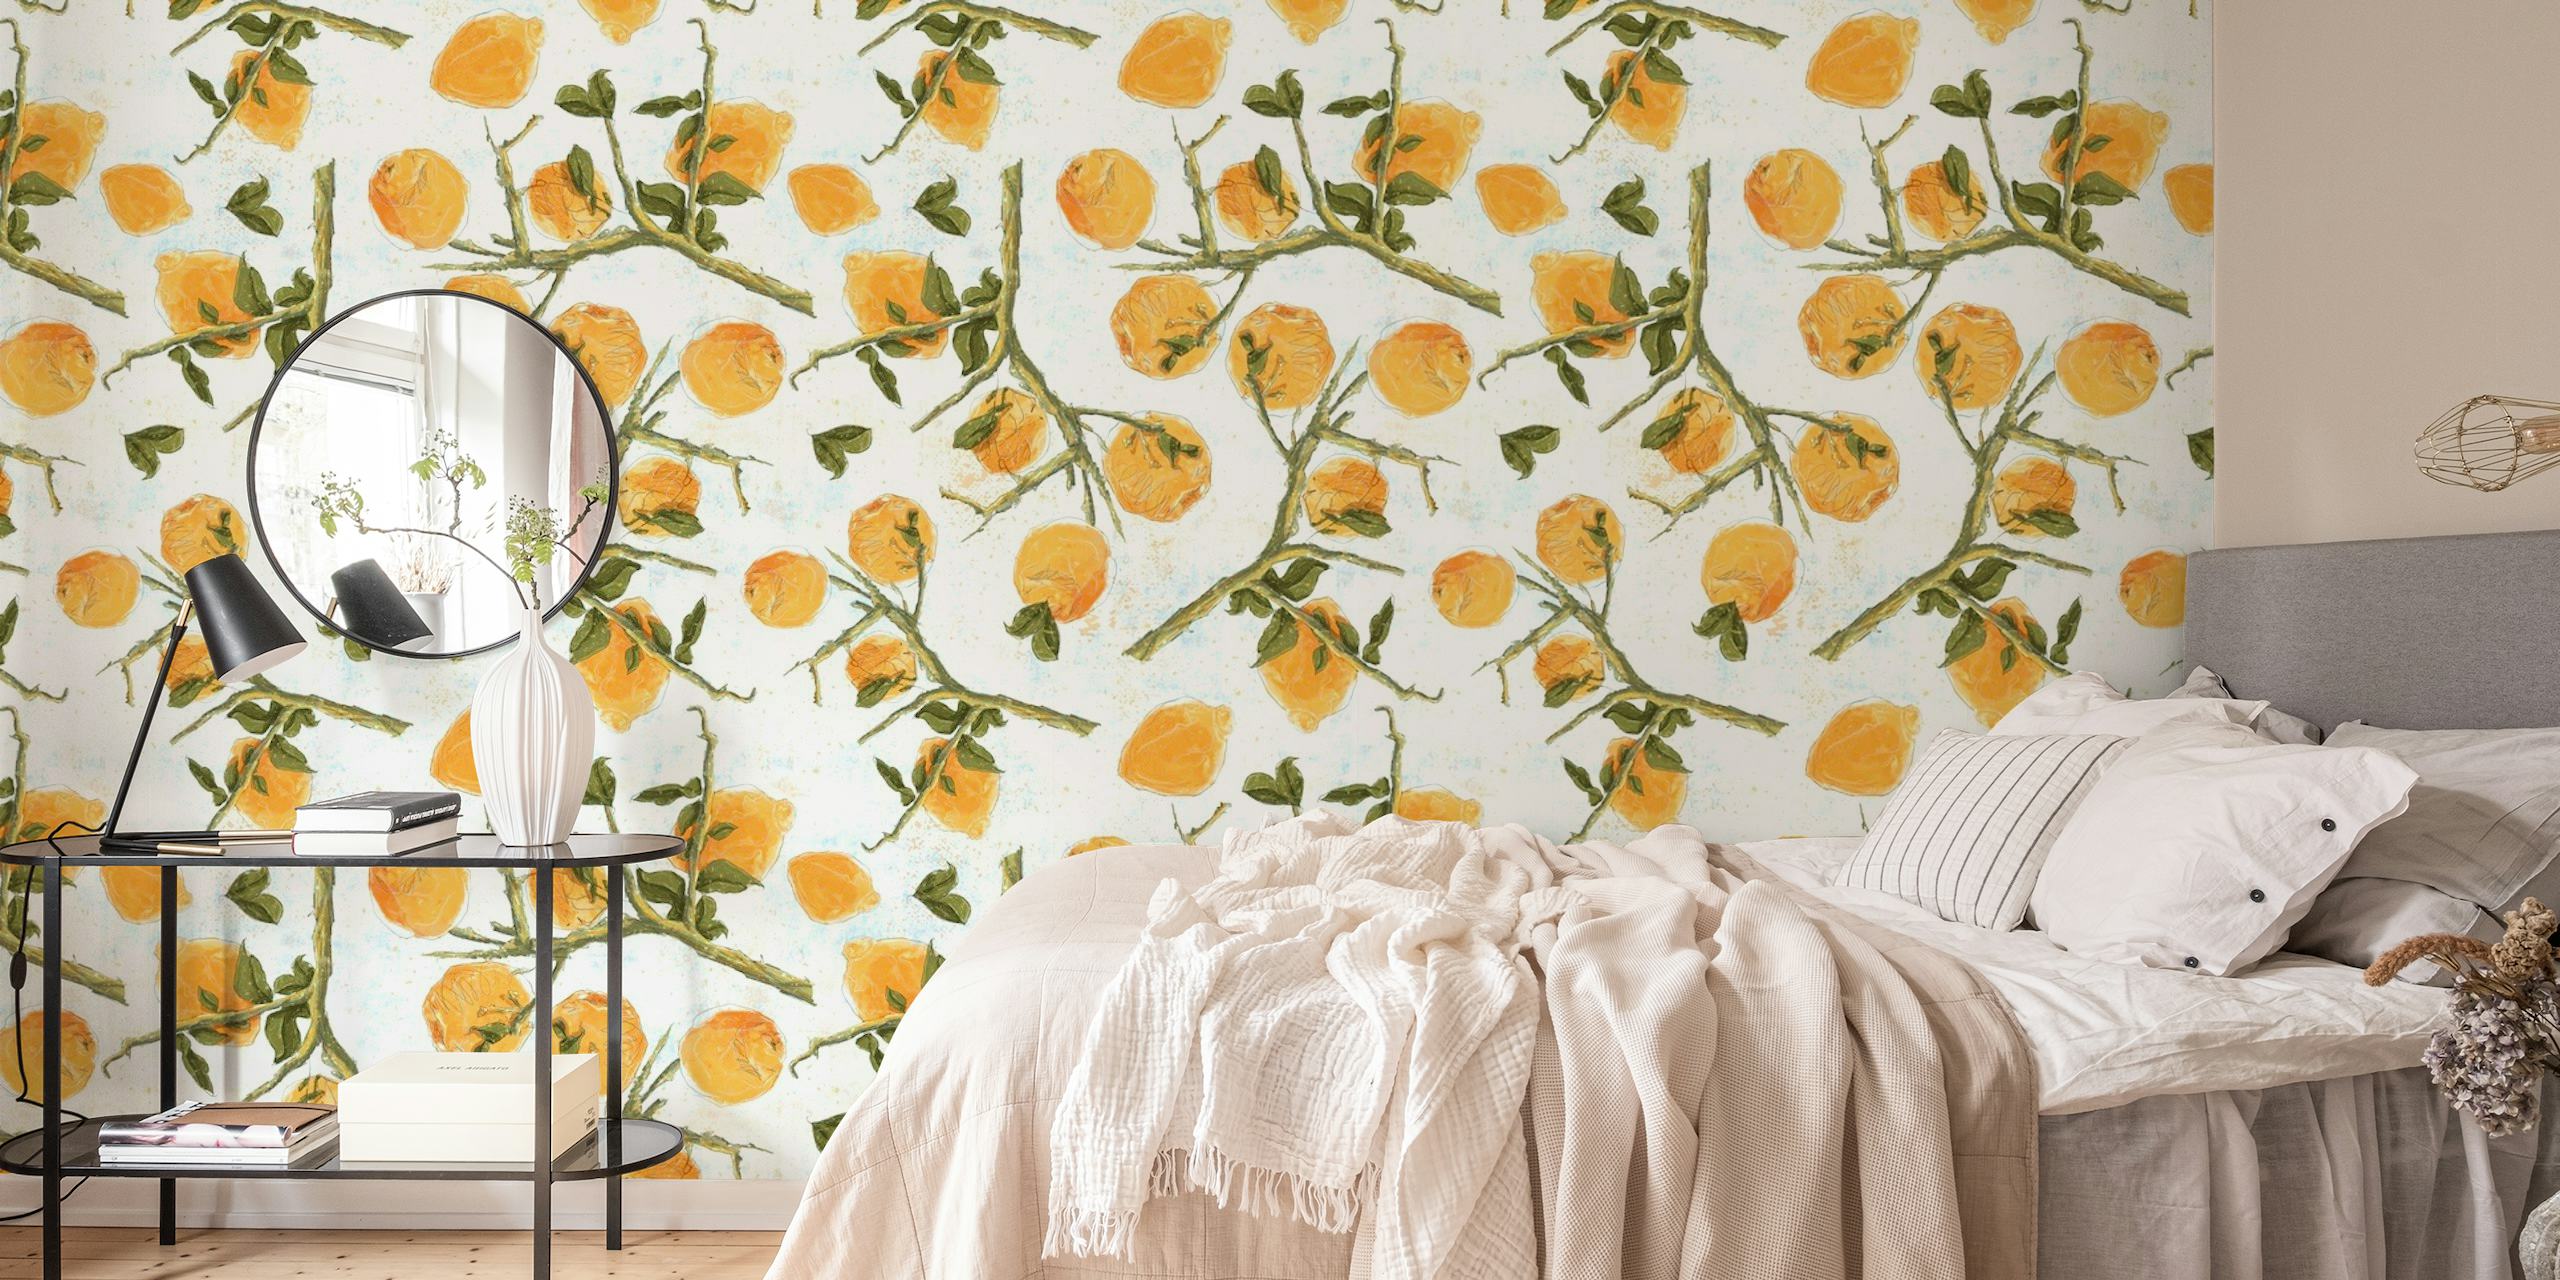 Fotomural vinílico de parede Limões em branco com frutas cítricas ilustradas e folhas verdes